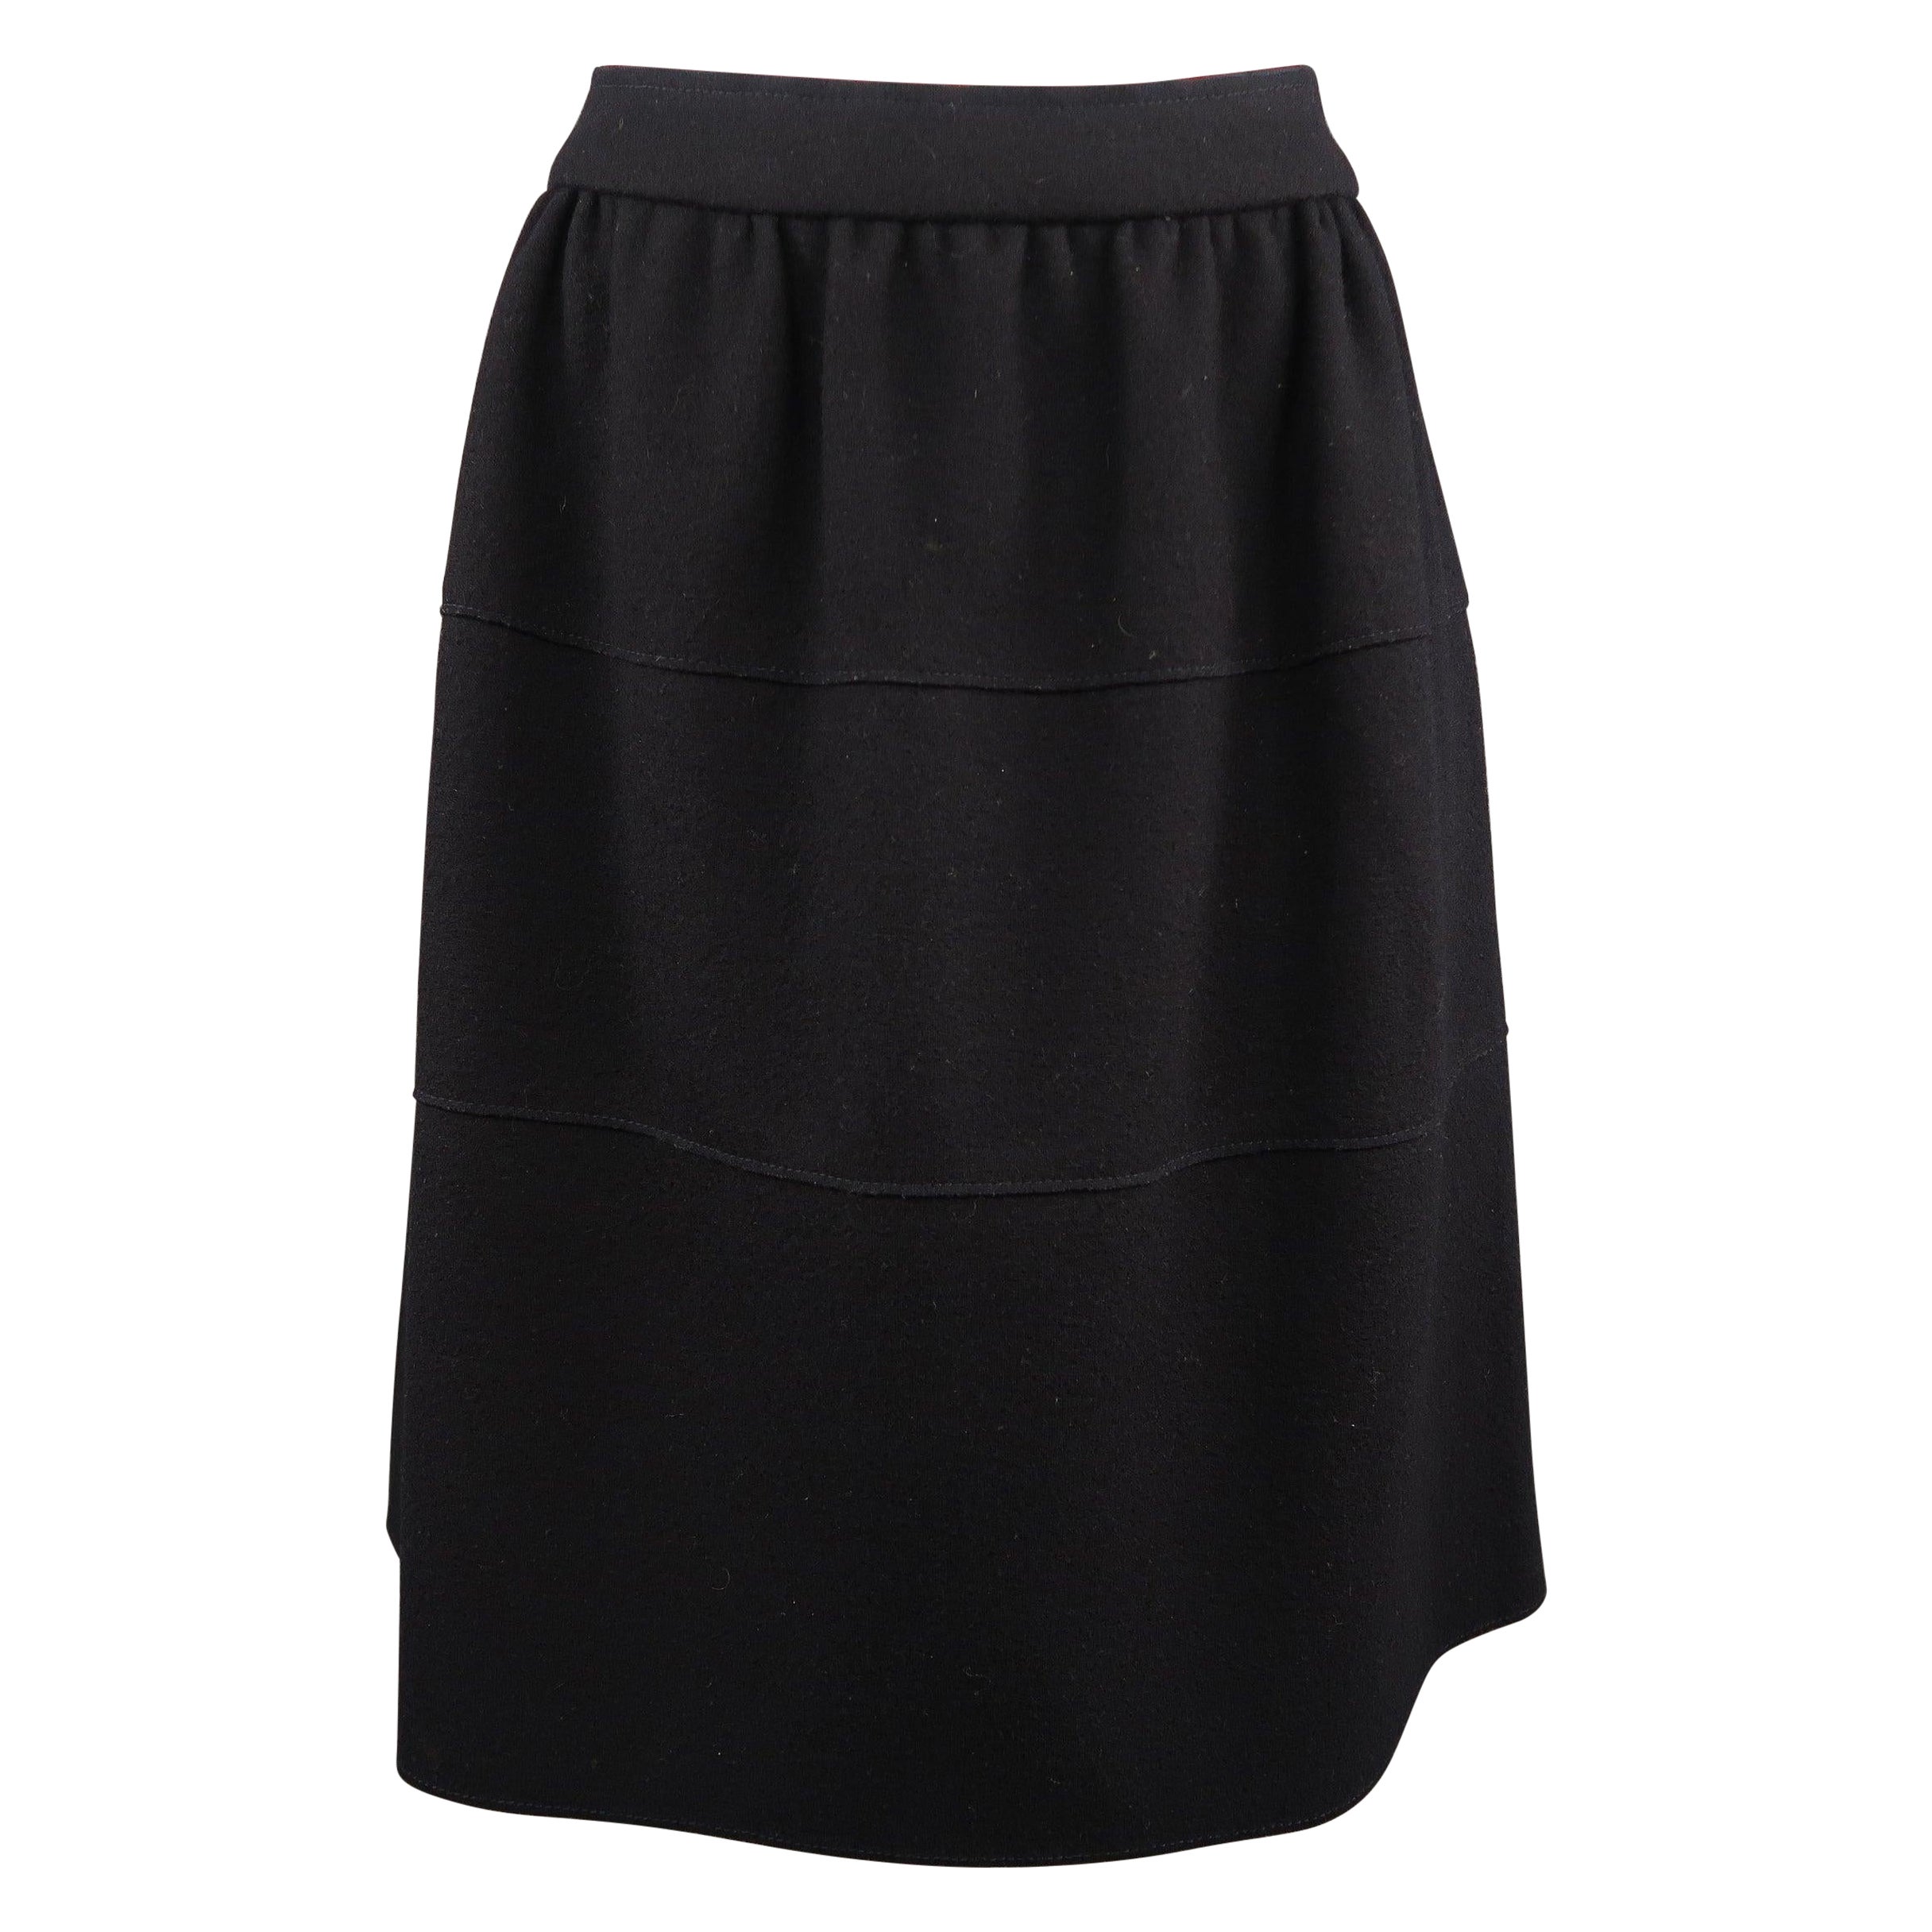 PRADA Size US 4 / IT 40 Black Virgin Wool Gathered Circle Skirt